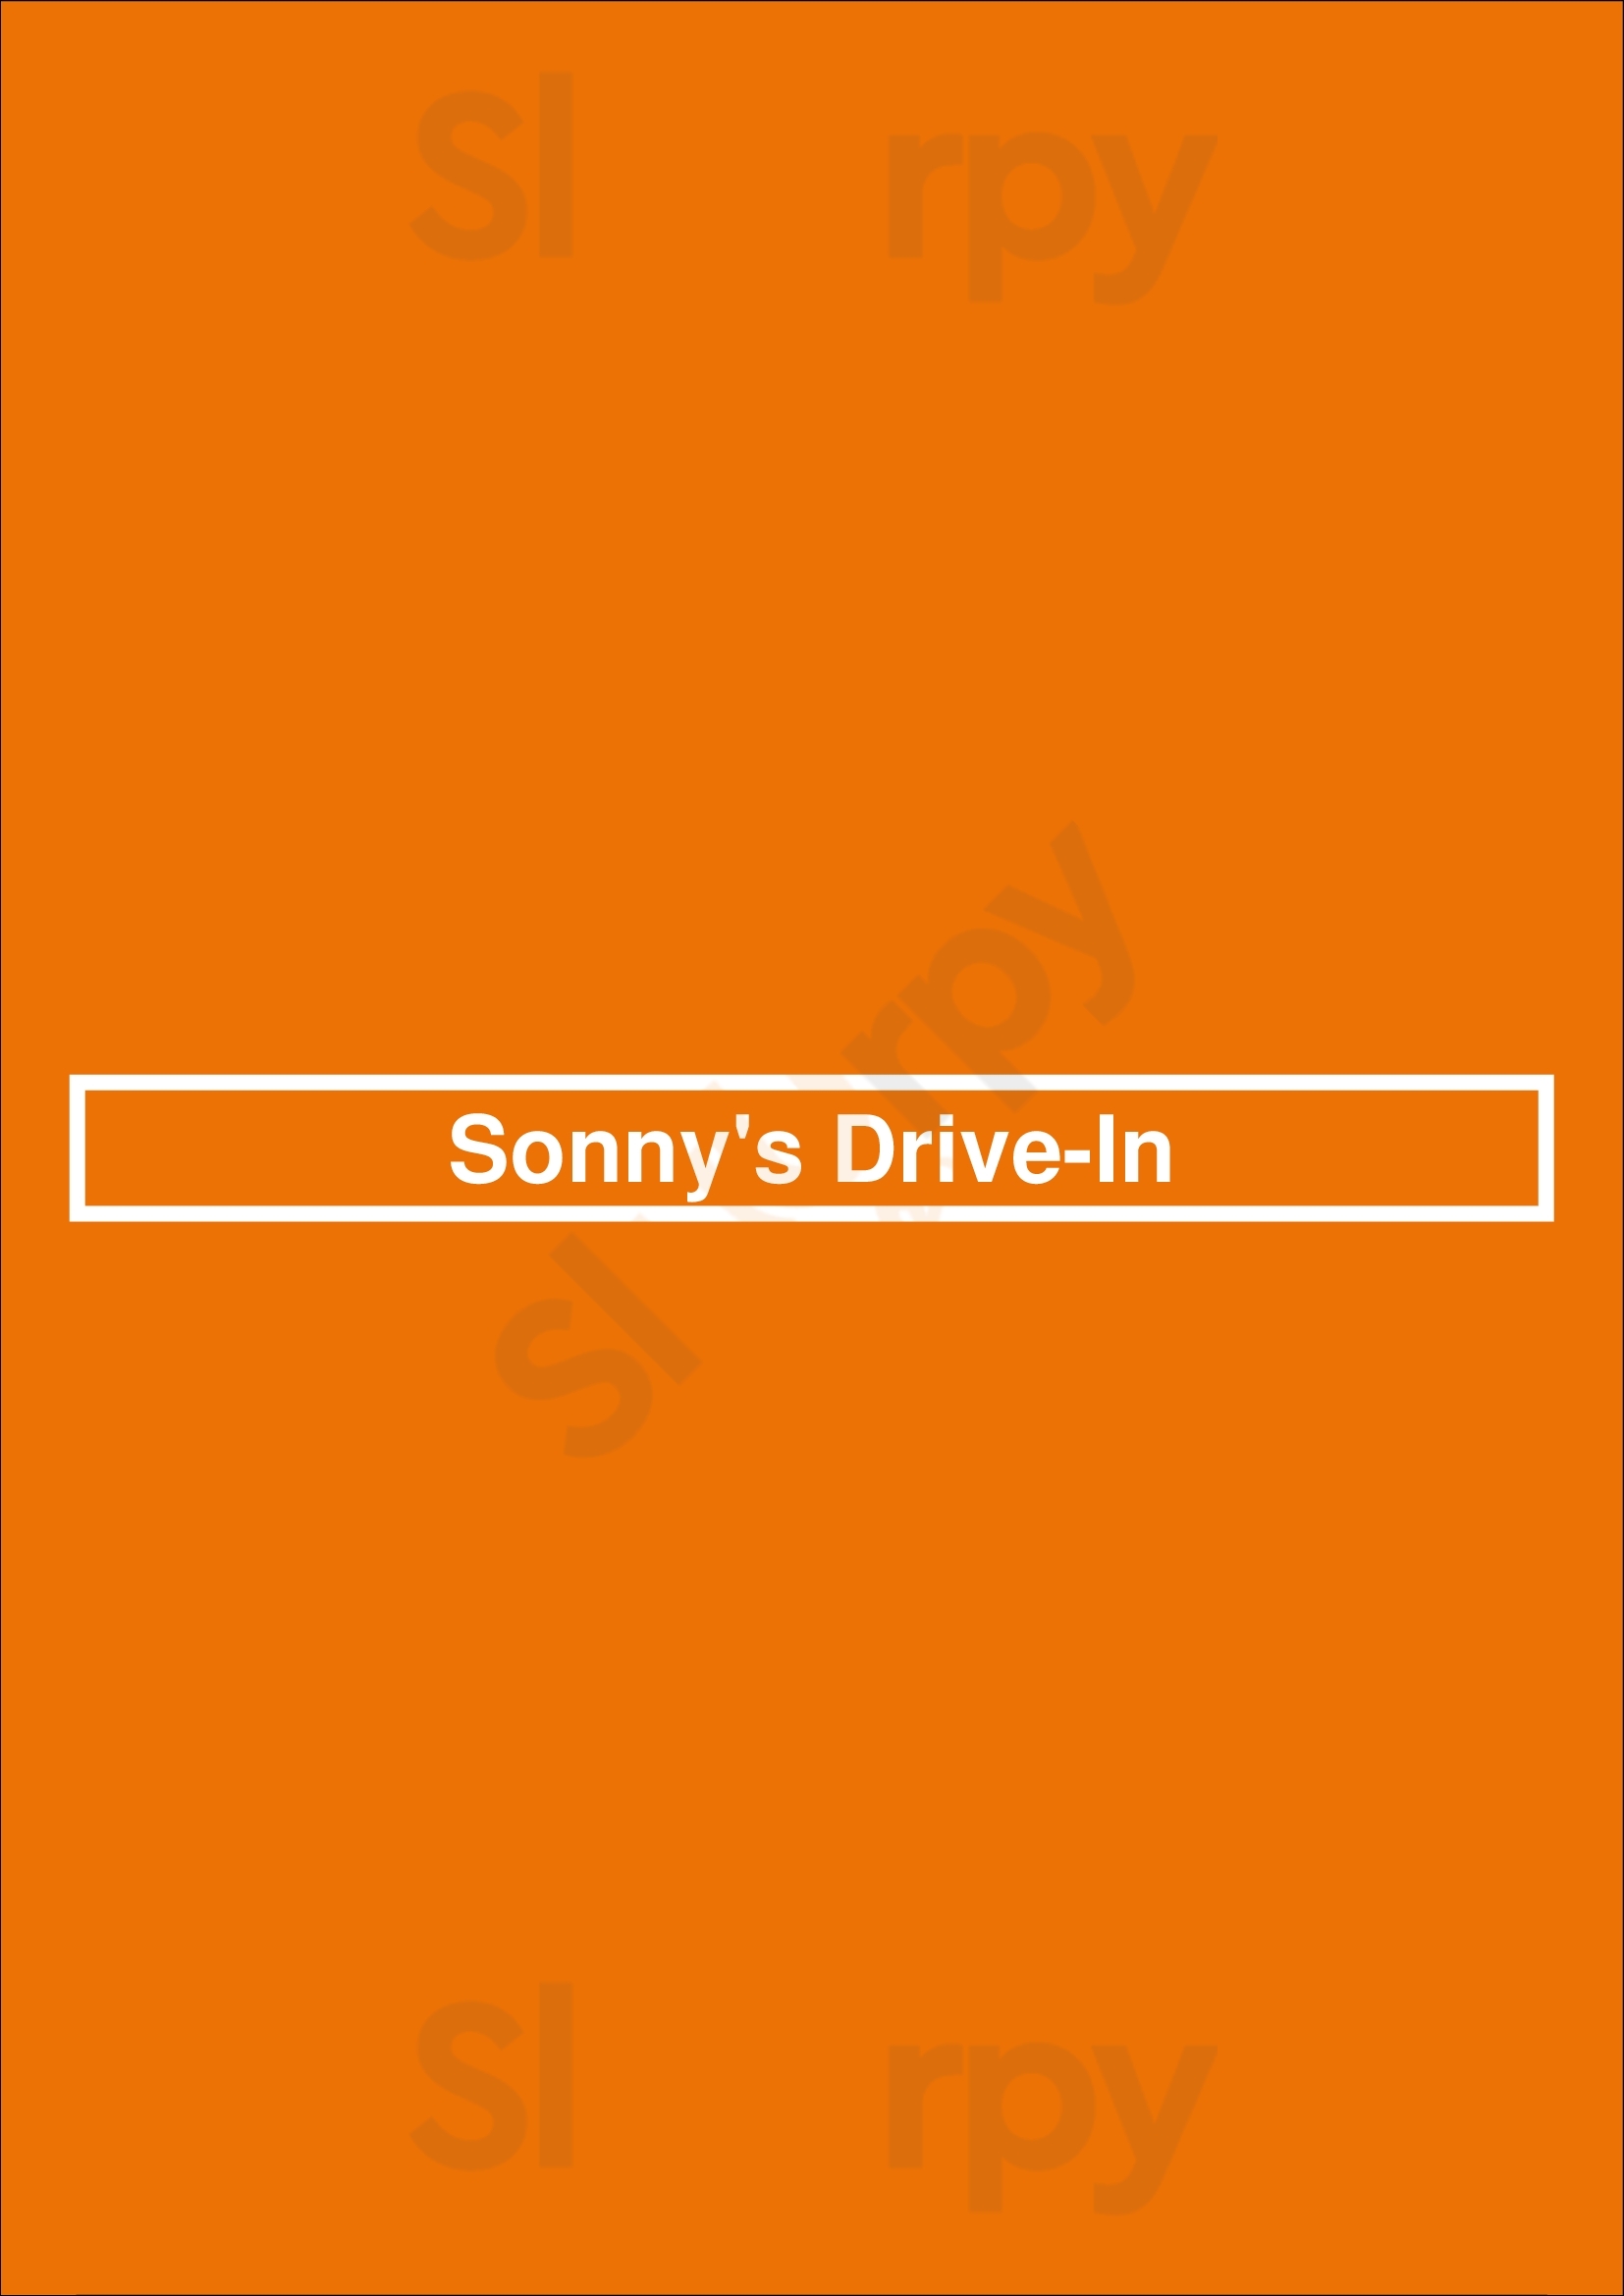 Sonny's Drive-in Waterloo Menu - 1